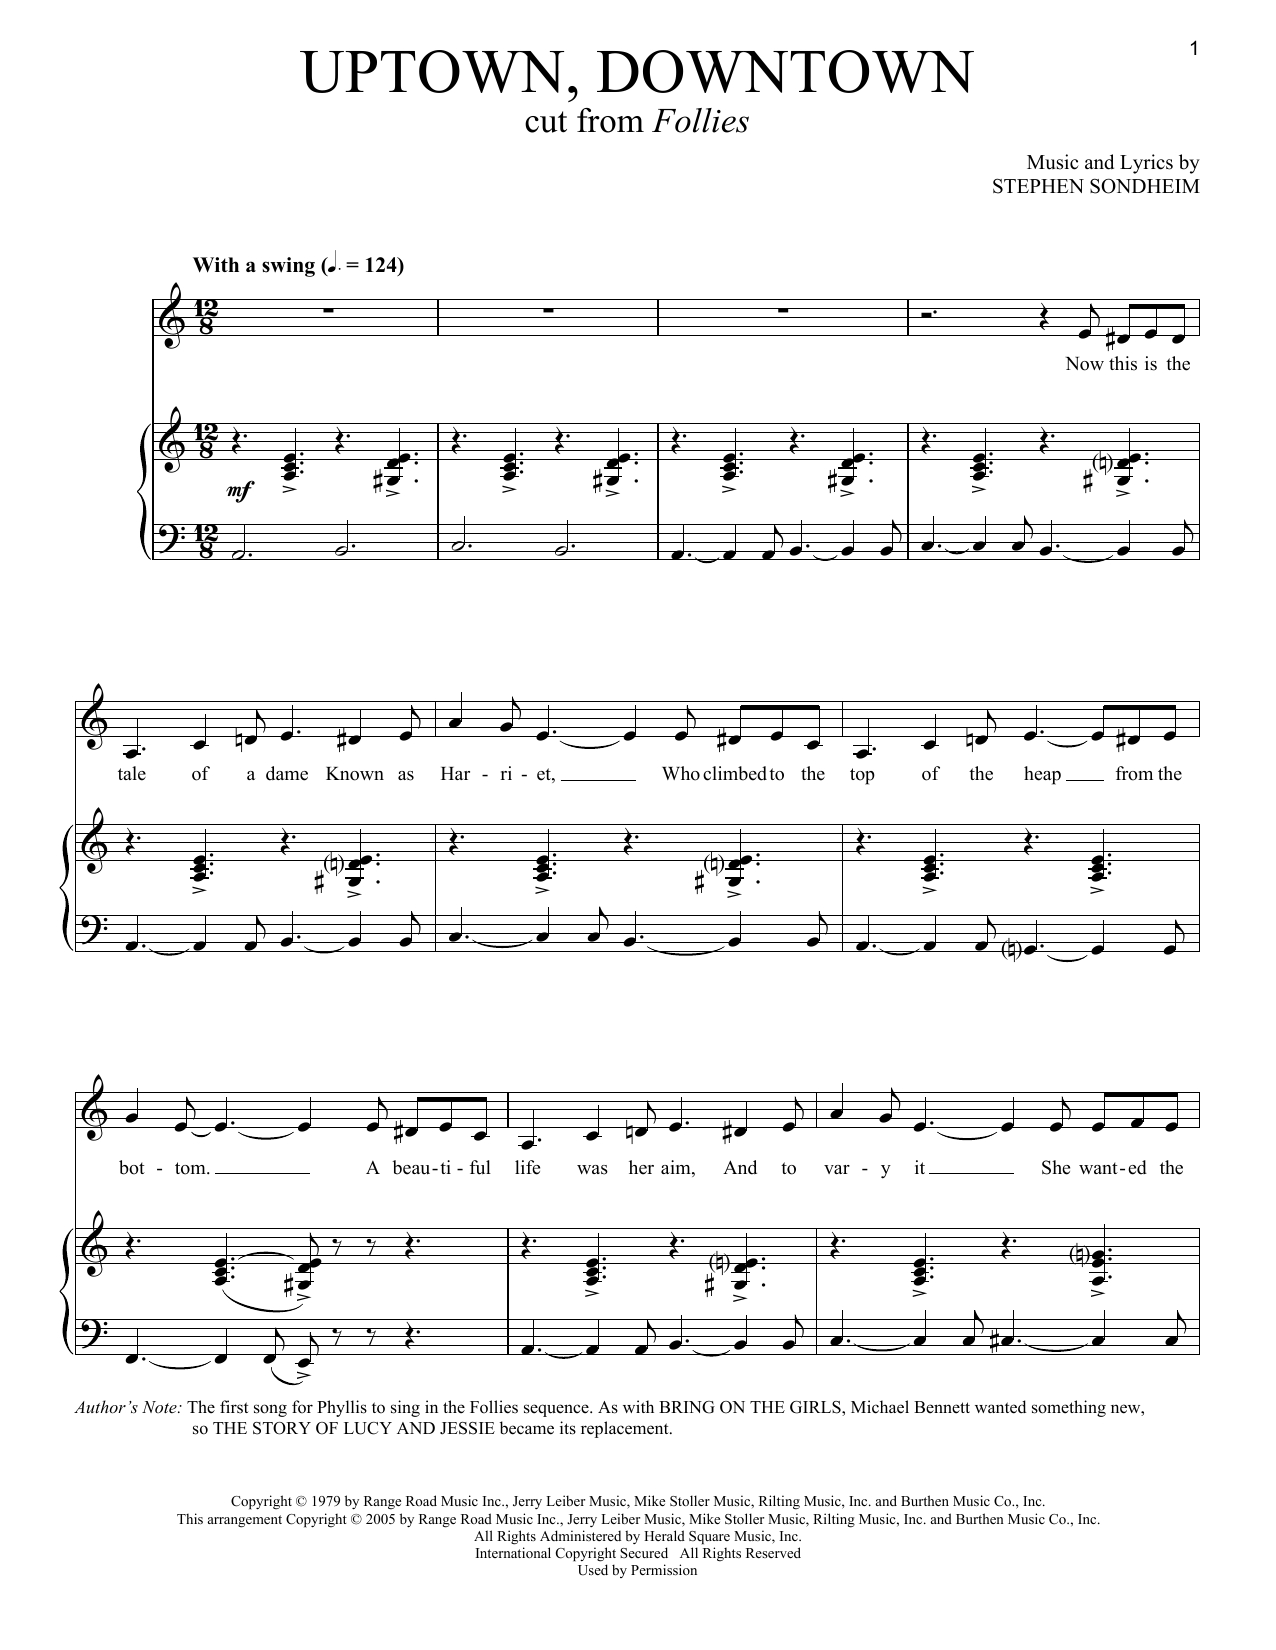 Stephen Sondheim Uptown, Downtown Sheet Music Notes, Chords - Sheet Music Online Free Printable